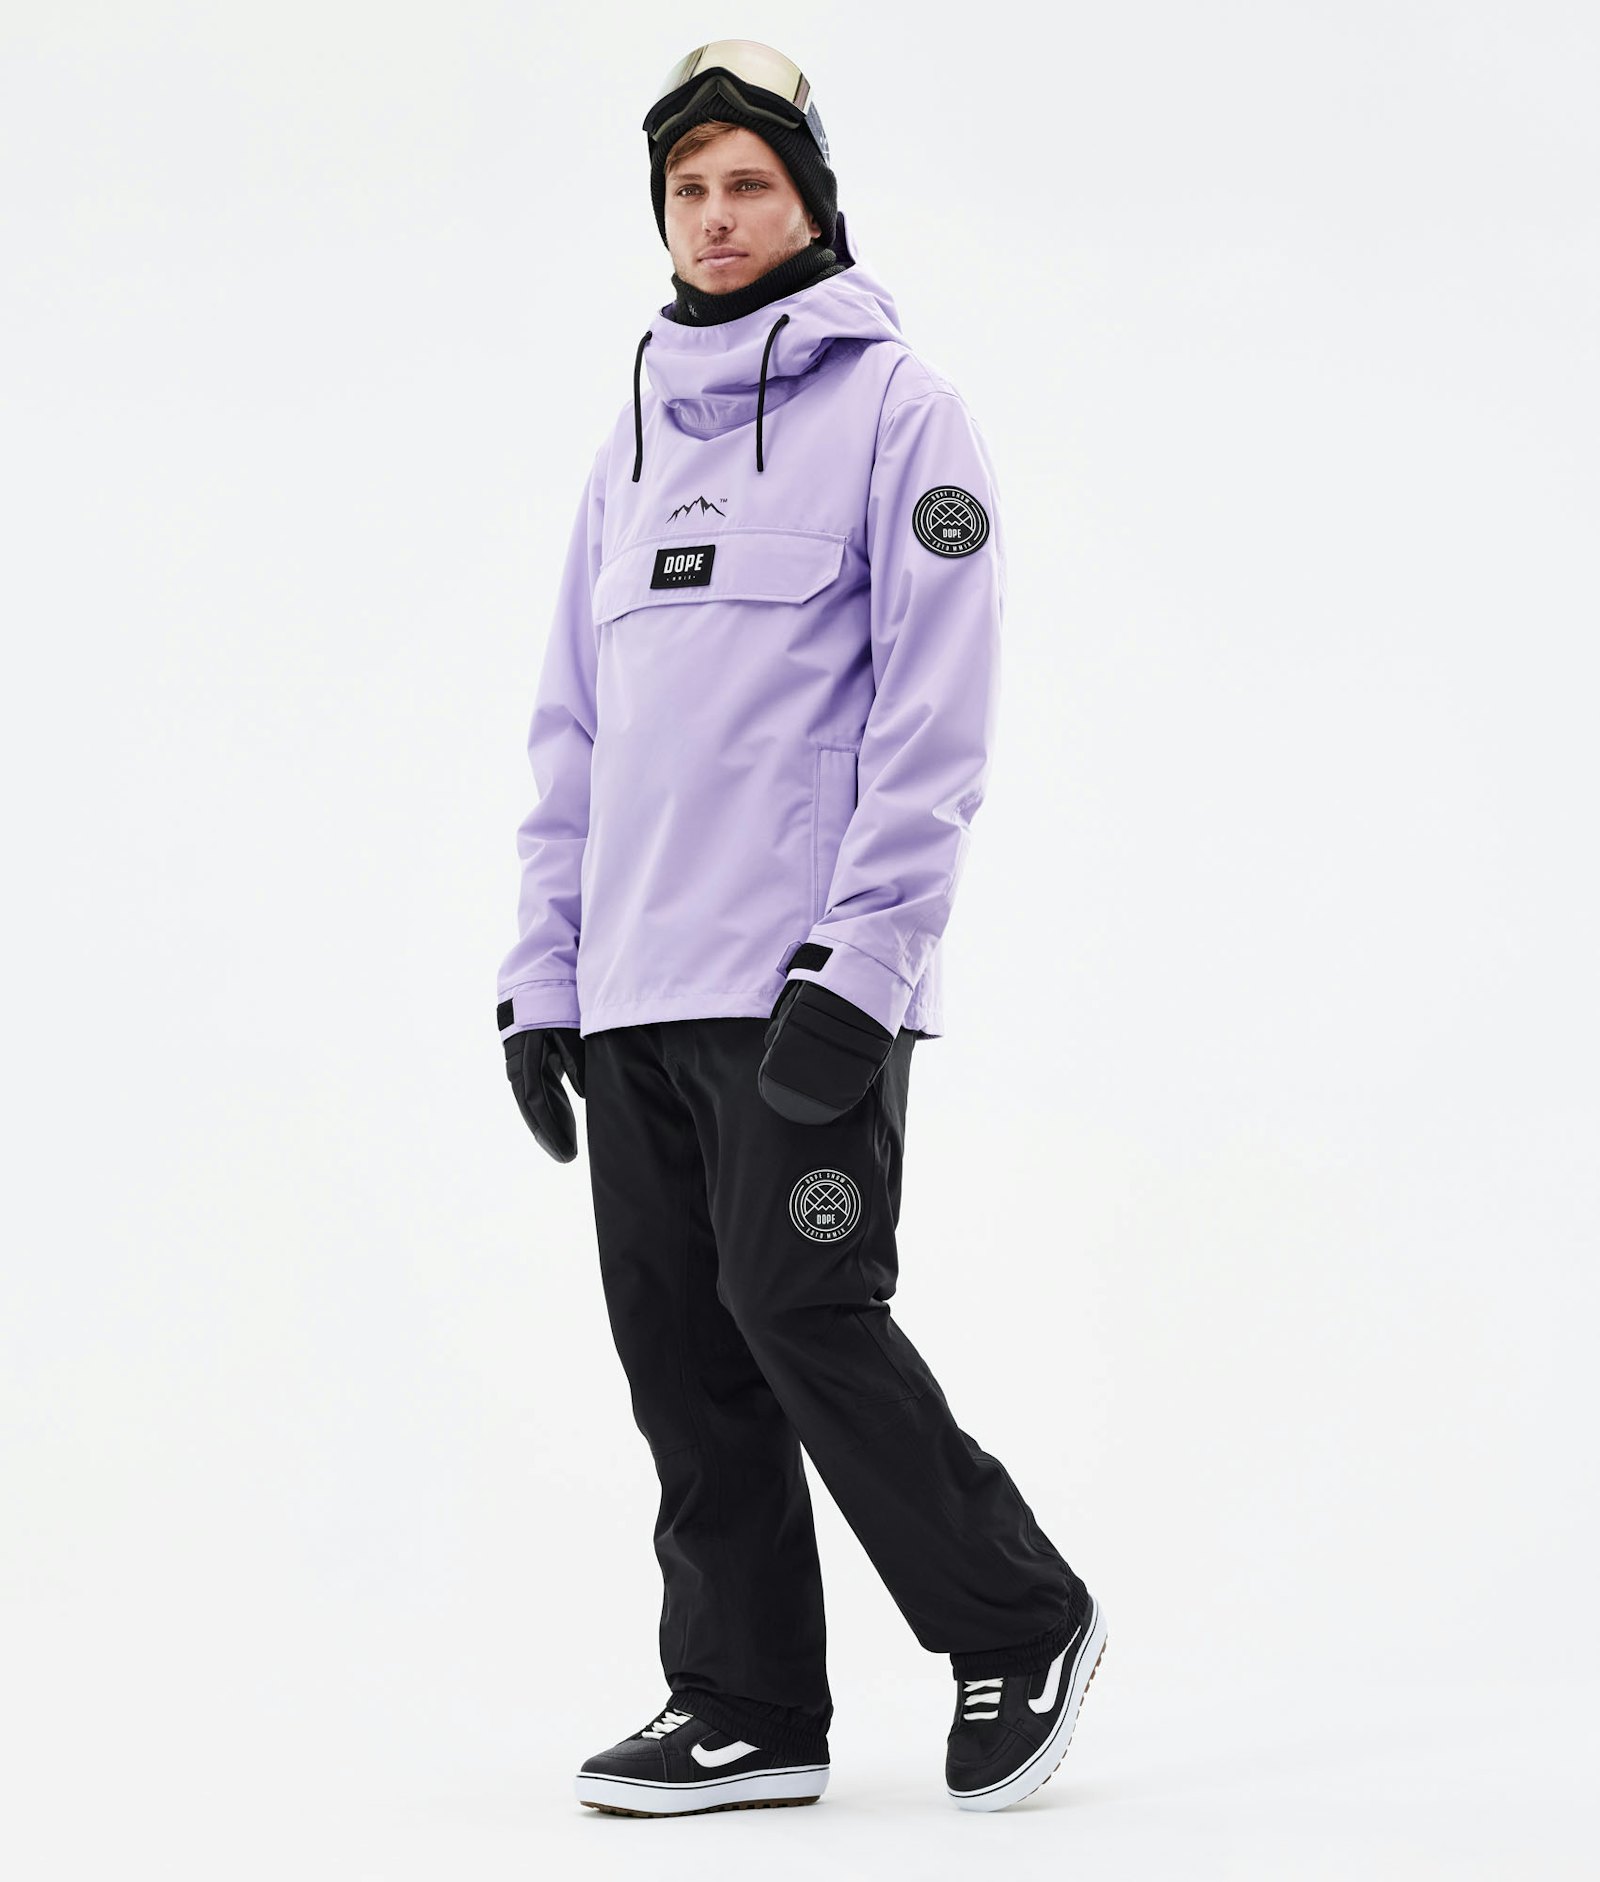 Blizzard 2021 Veste Snowboard Homme Faded Violet